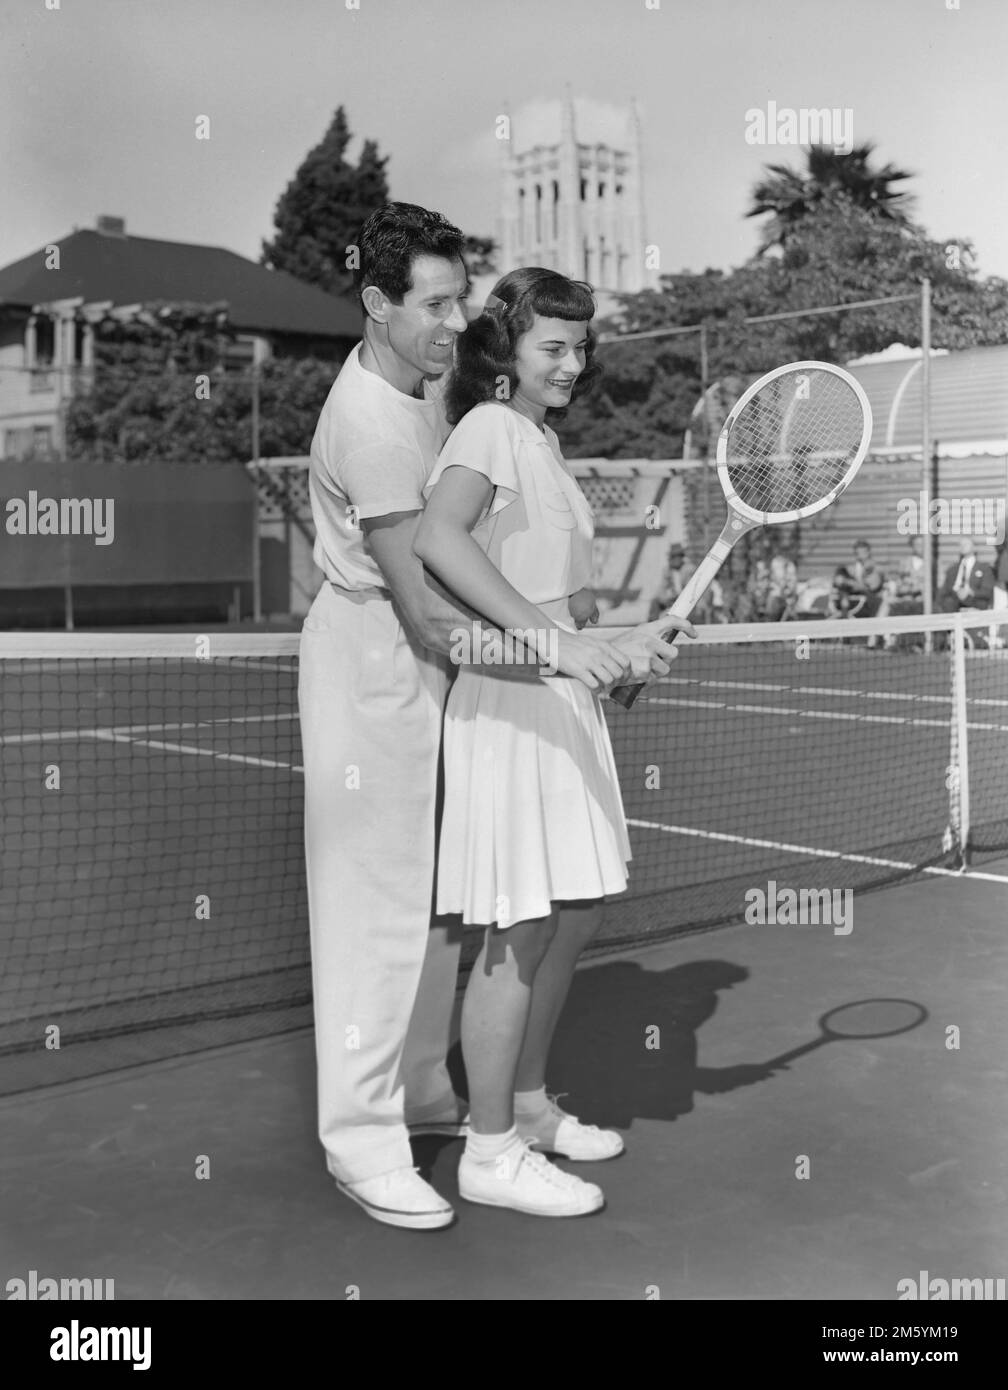 Una lezione di tennis personale e ravvicinata nel sud della California, ca. 1948. Foto Stock